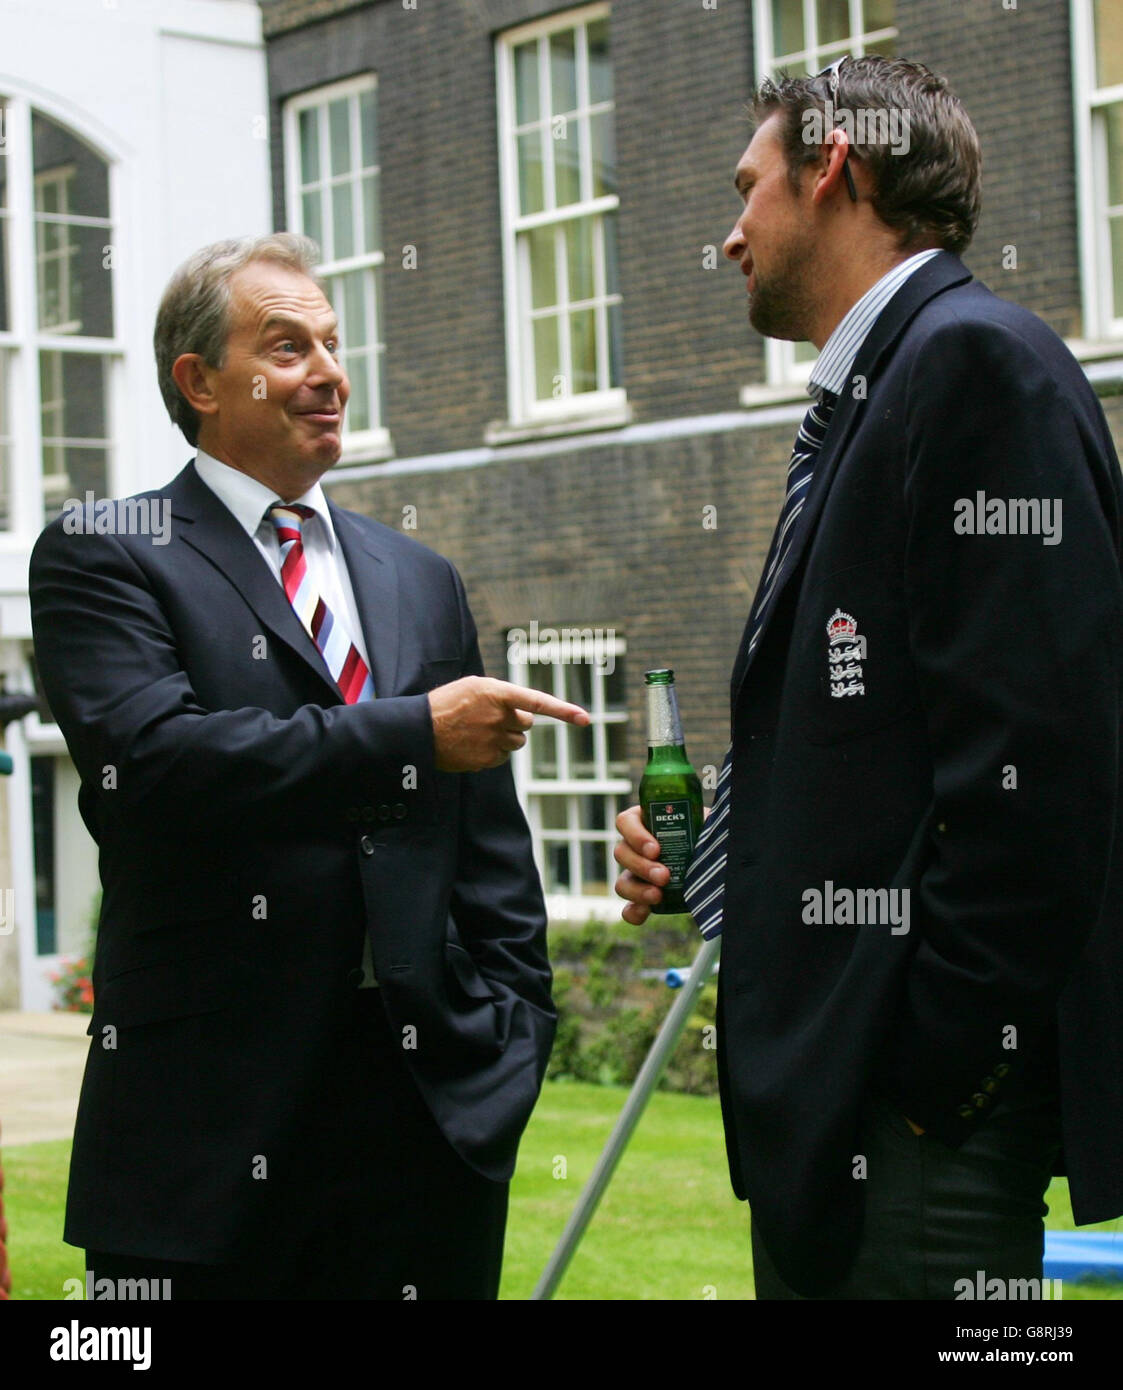 Le Premier ministre britannique Tony Blair s'entretient avec le cricketer Steve Harmison pendant une réception à Downing Street dans le centre de Londres, le mardi 13 septembre 2005 en l'honneur de l'équipe de cricket de l'Angleterre qui a battu l'Australie dans une série de cinq matchs pour retrouver les cendres.Des dizaines de milliers de fans de cricket d'Angleterre ont envahi les rues de Londres aujourd'hui pour féliciter leur équipe après que les premières cendres de l'Angleterre ont triomphé de l'Australie pendant près de deux décennies.Voir PA Story SPORTS Ashes.APPUYEZ SUR ASSOCIATION photo.Le crédit photo devrait se lire comme suit : Mike Finn-Kelcey/PA/WPA Pool/Reuters Banque D'Images